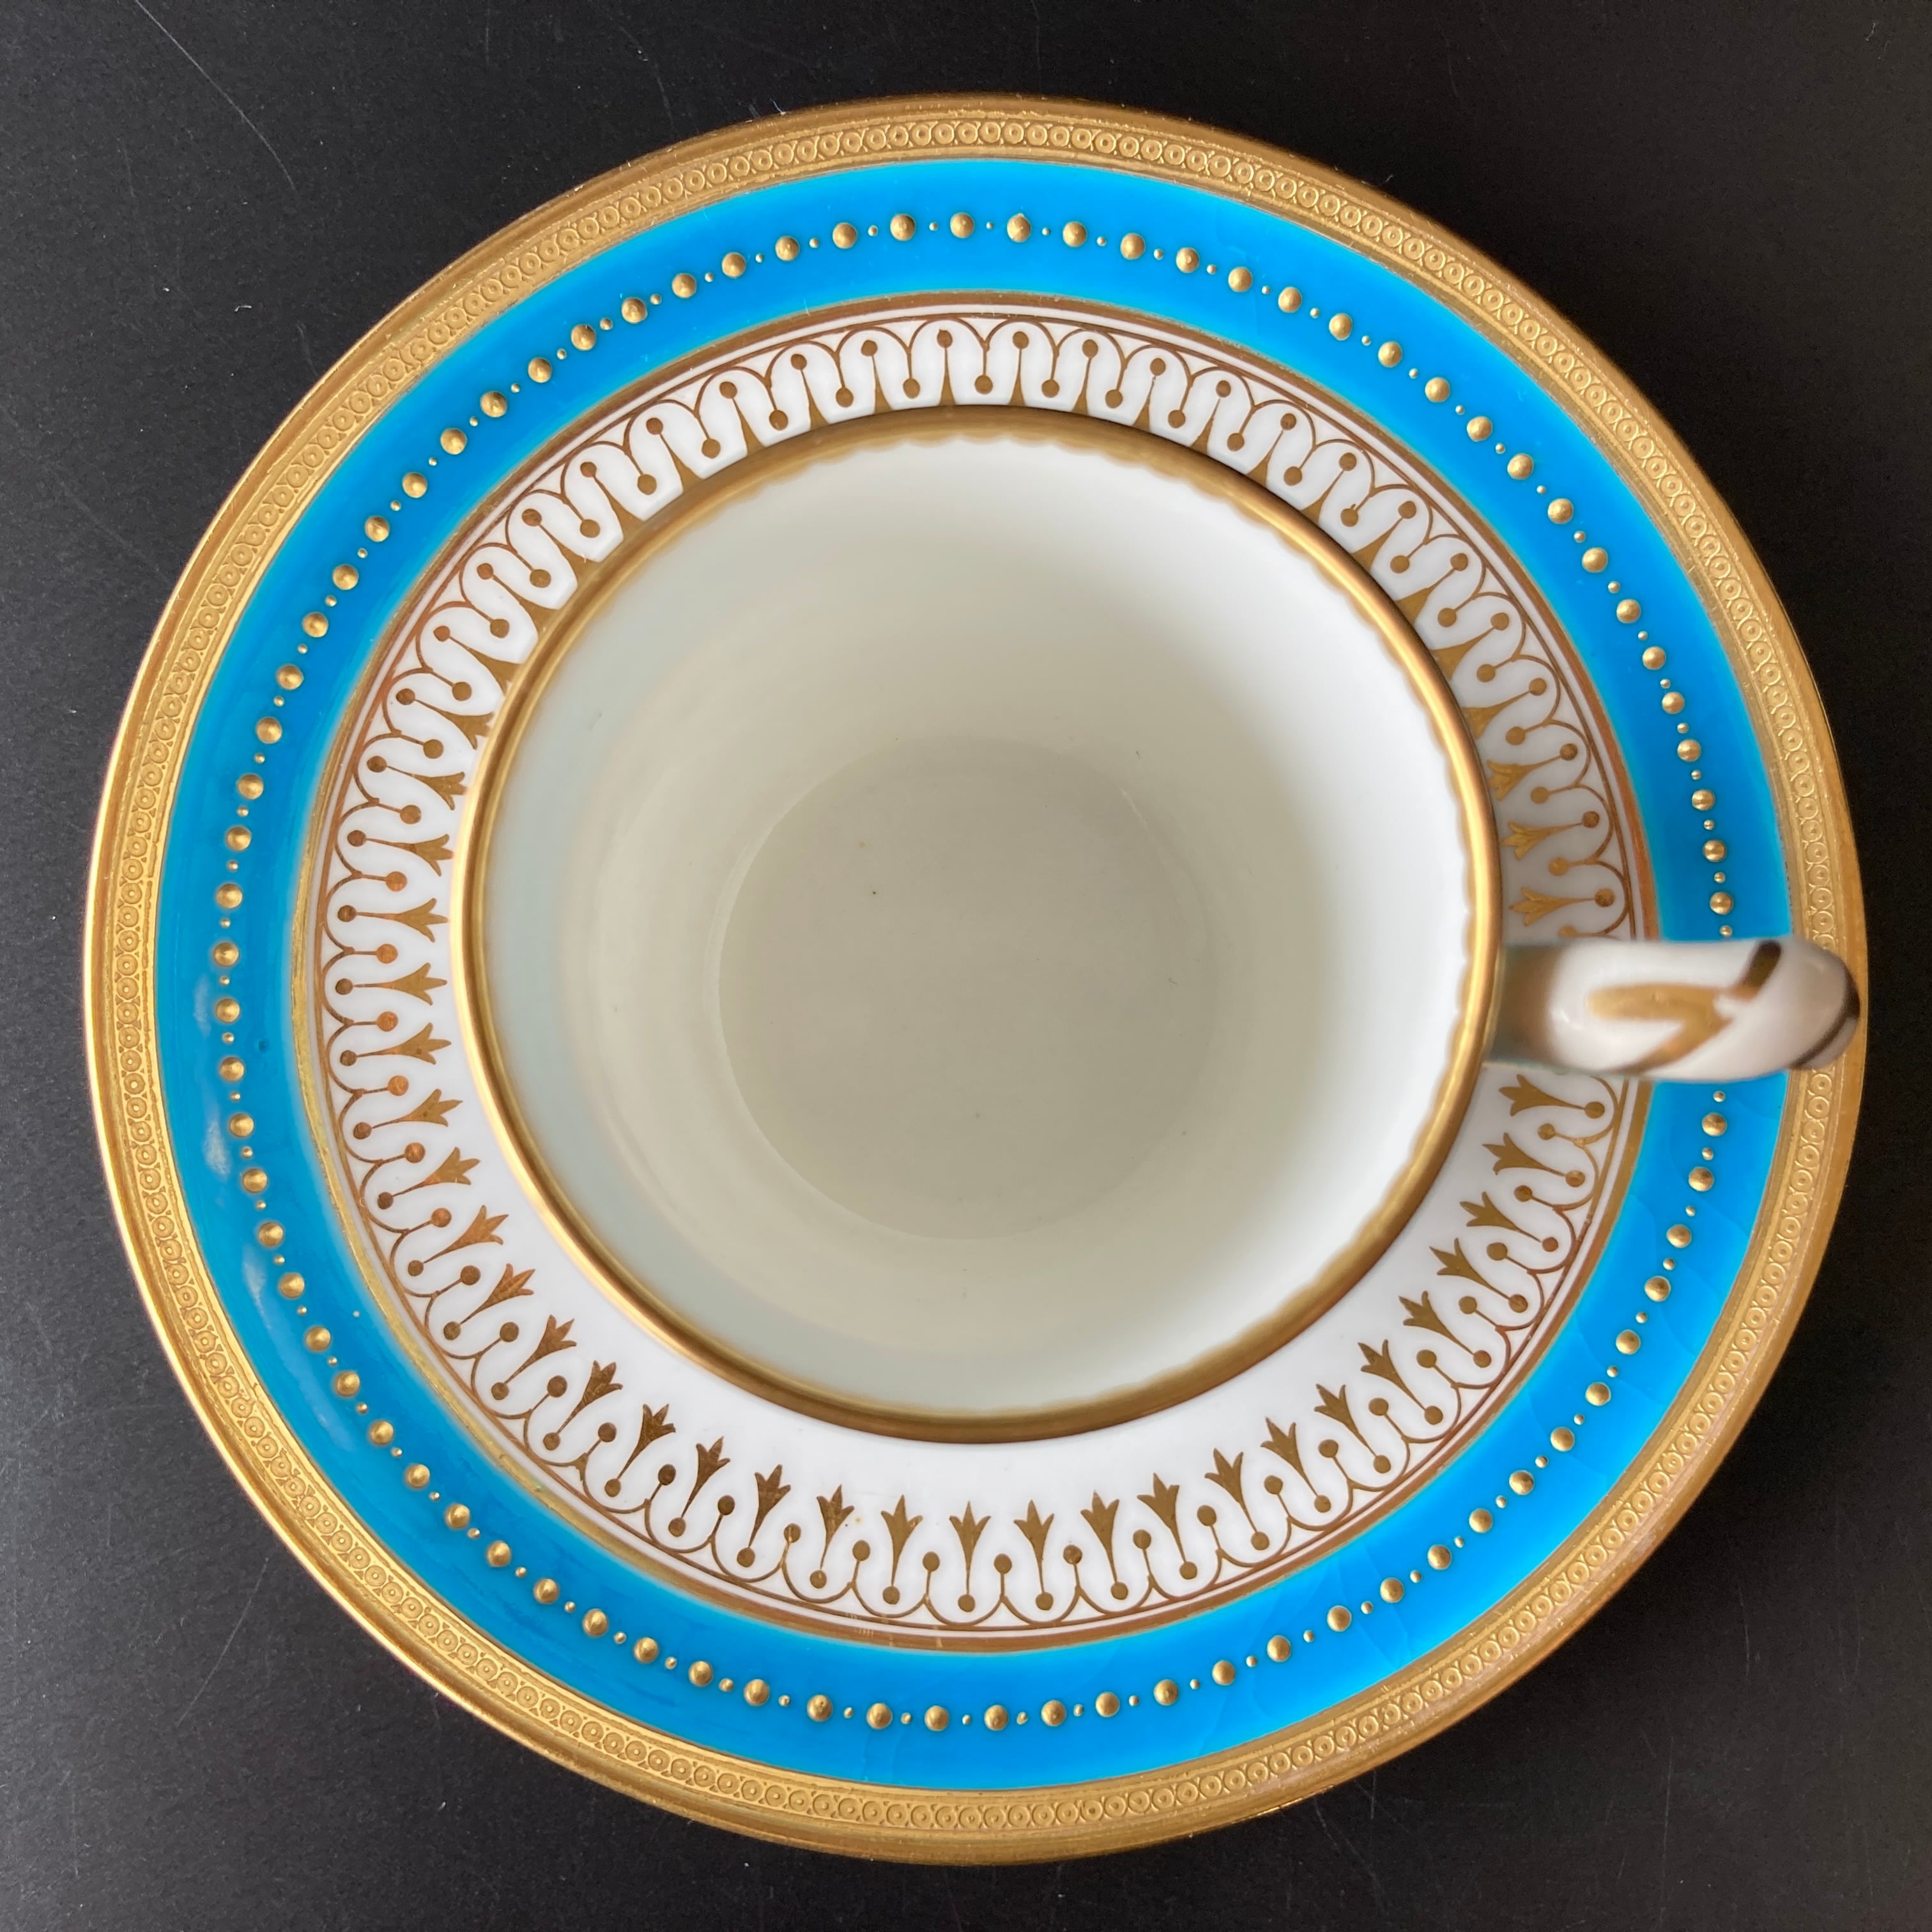 ミントン ターコイズブルー 風景絵図飾皿 エナメル七宝金彩 金盛